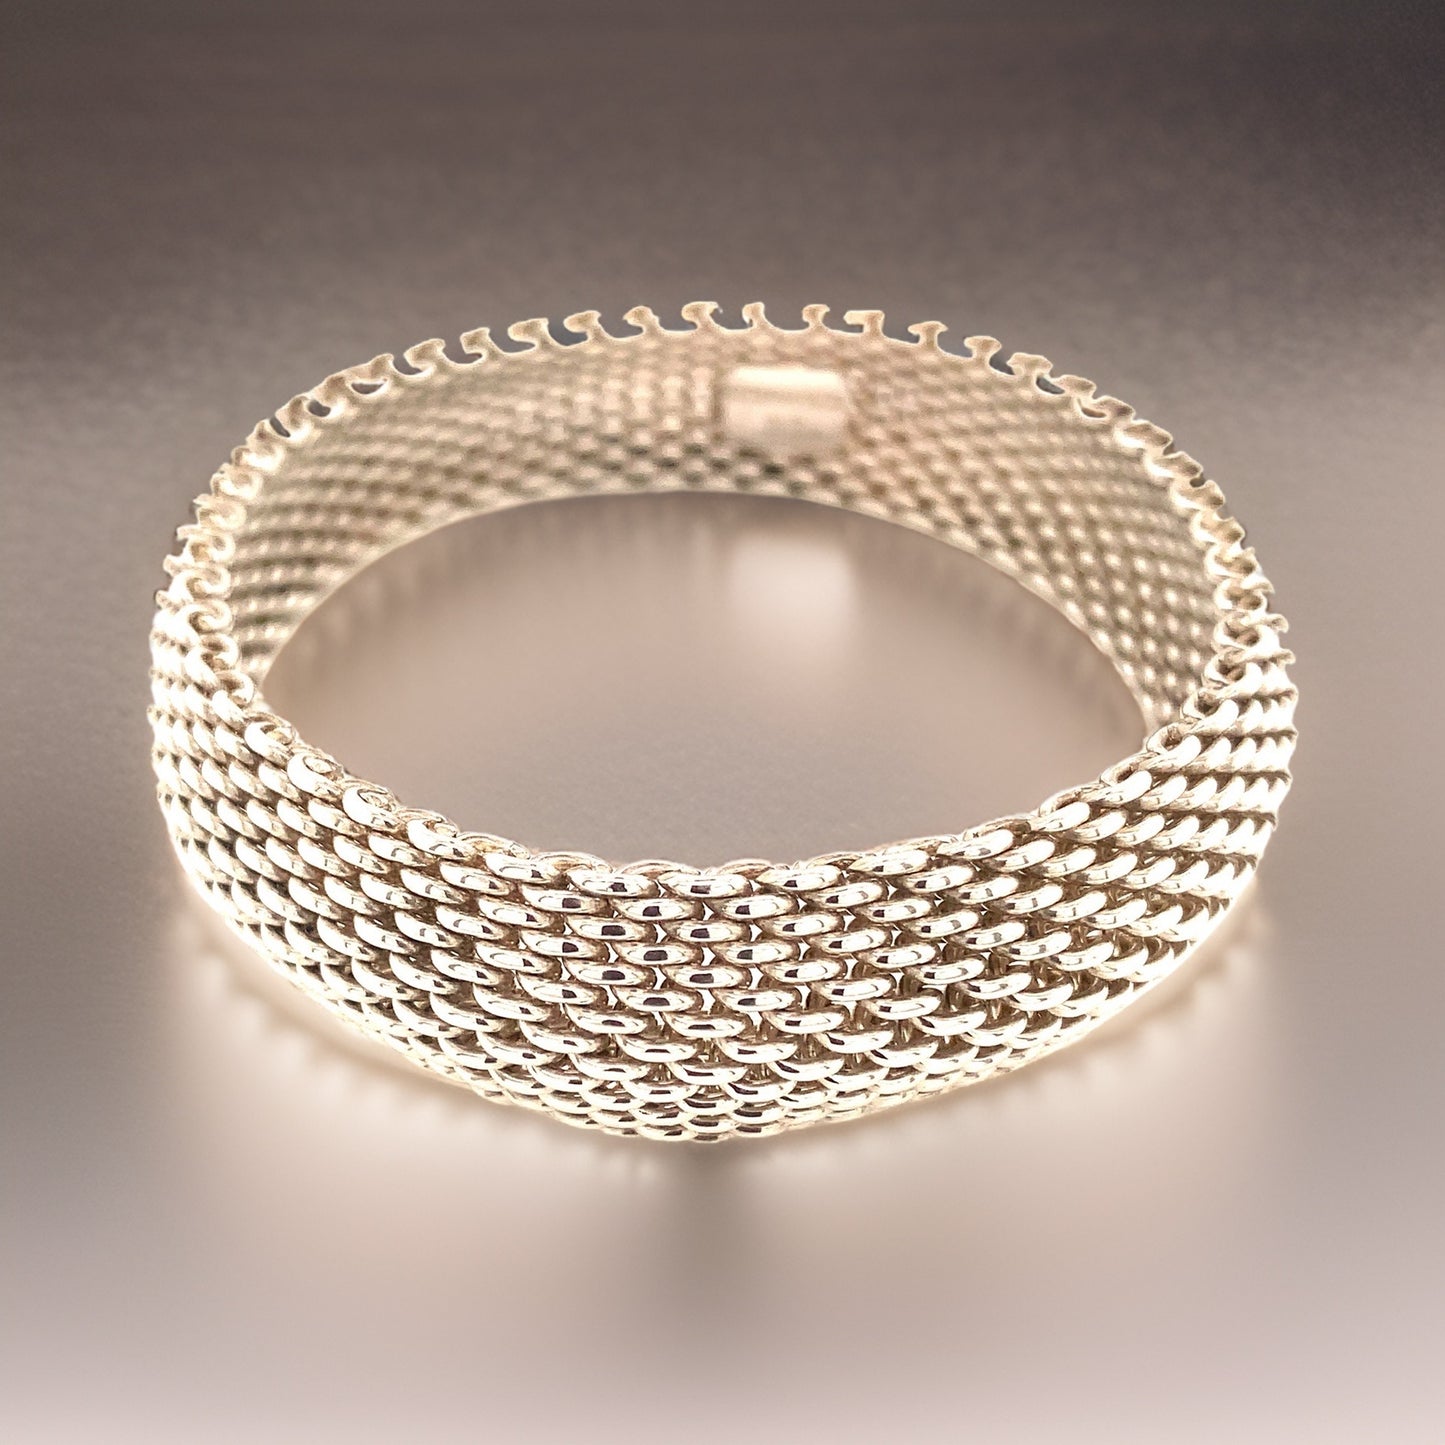 Tiffany & Co Estate Somerset Bracelet 7.5" Sterling Silver 15 mm TIF578 - Certified Fine Jewelry